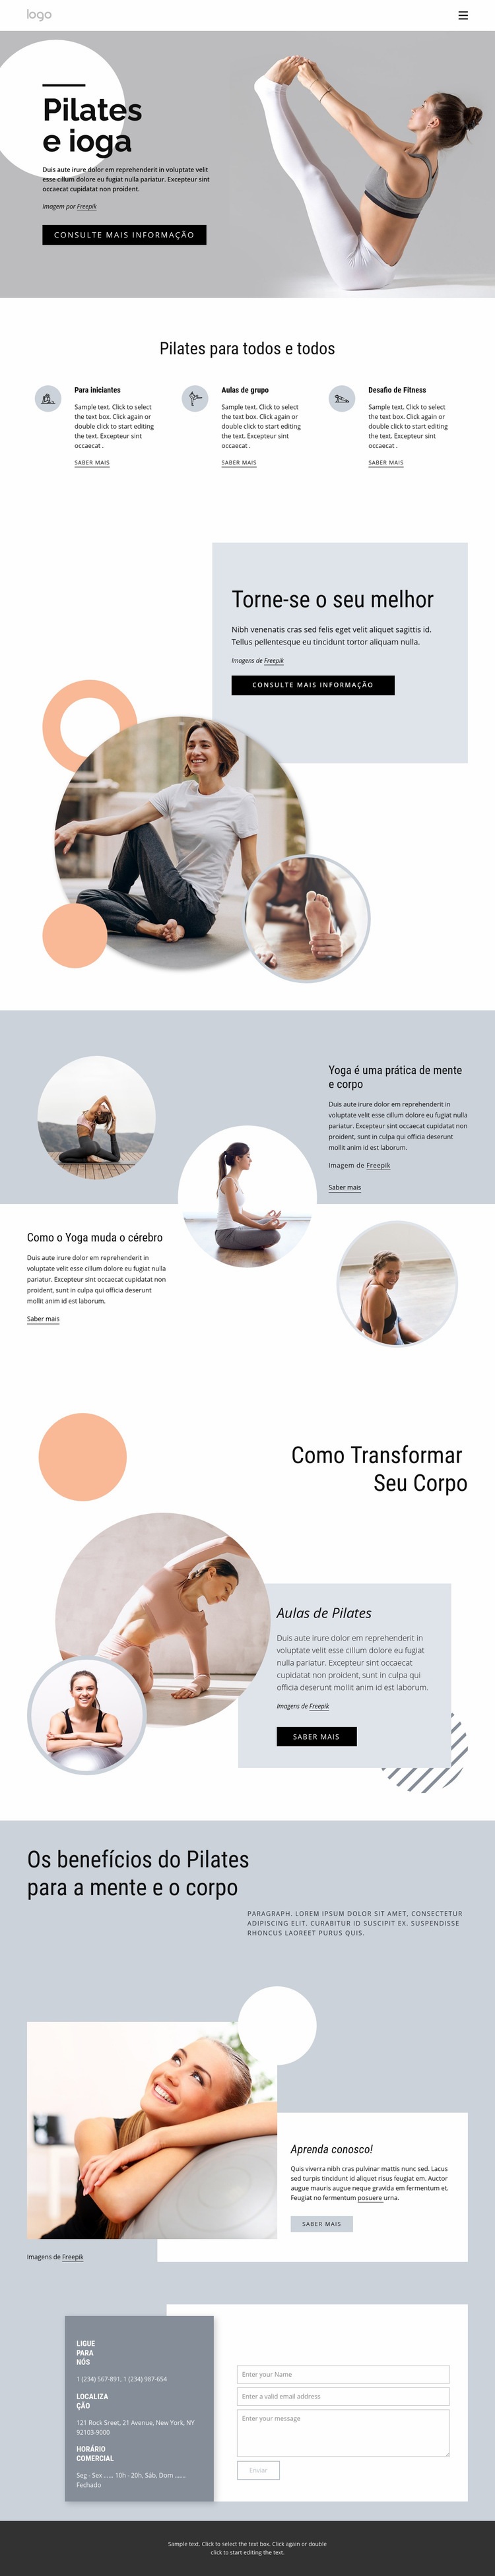 Centro de pilates e ioga Design do site